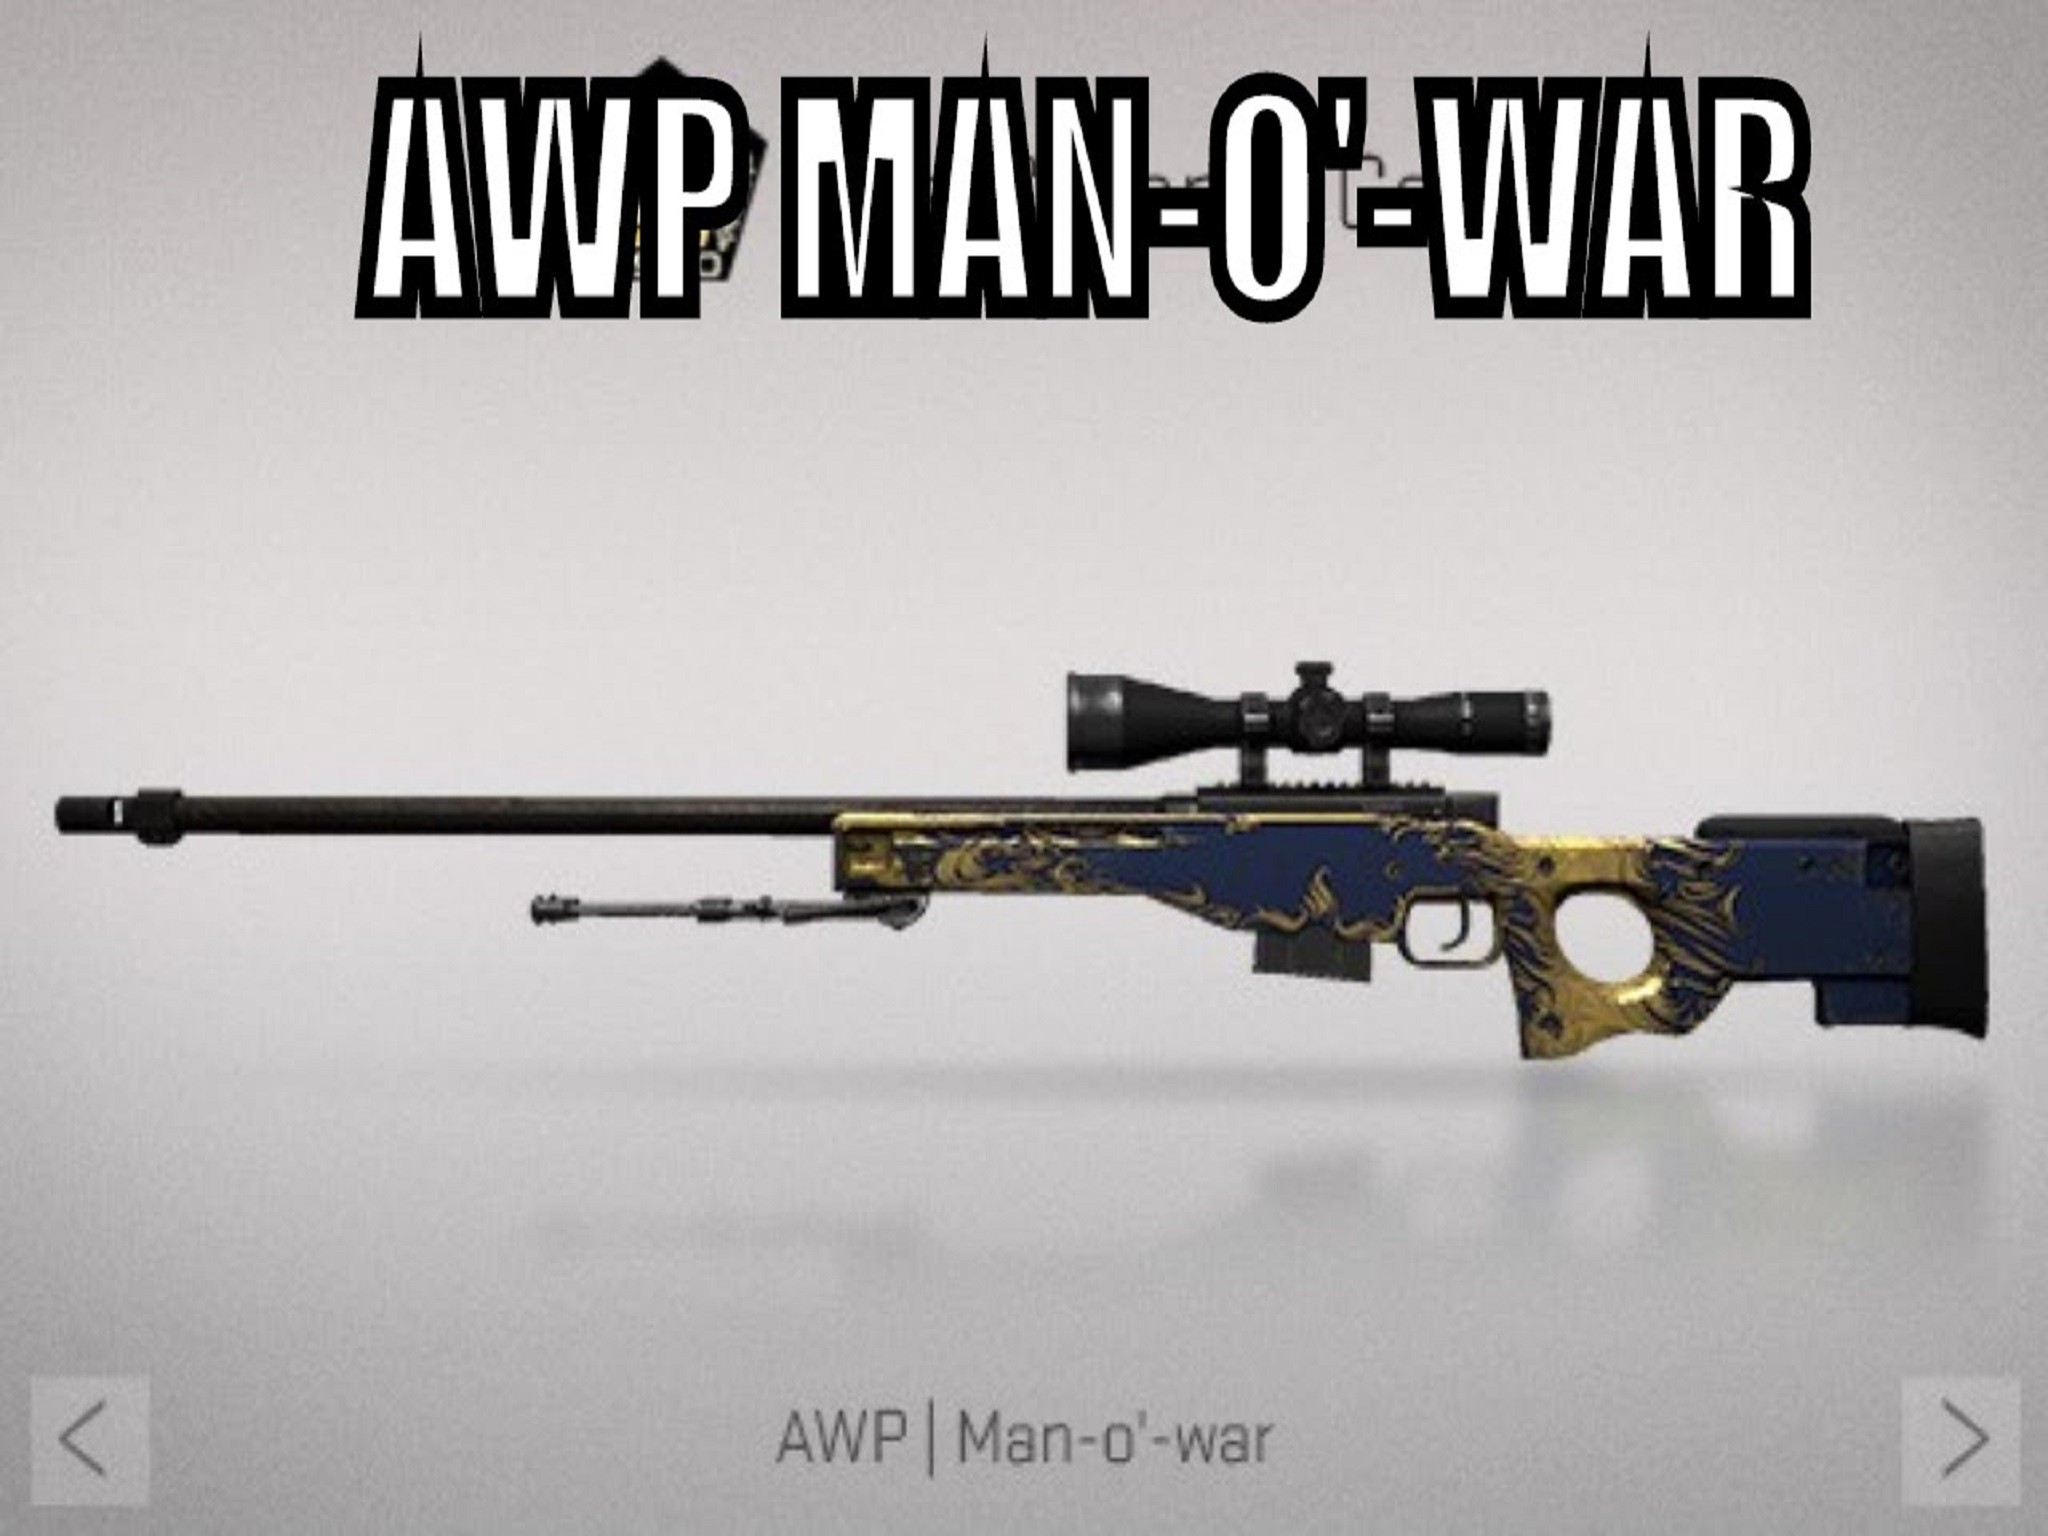 Awp man of war minimal wear фото 74